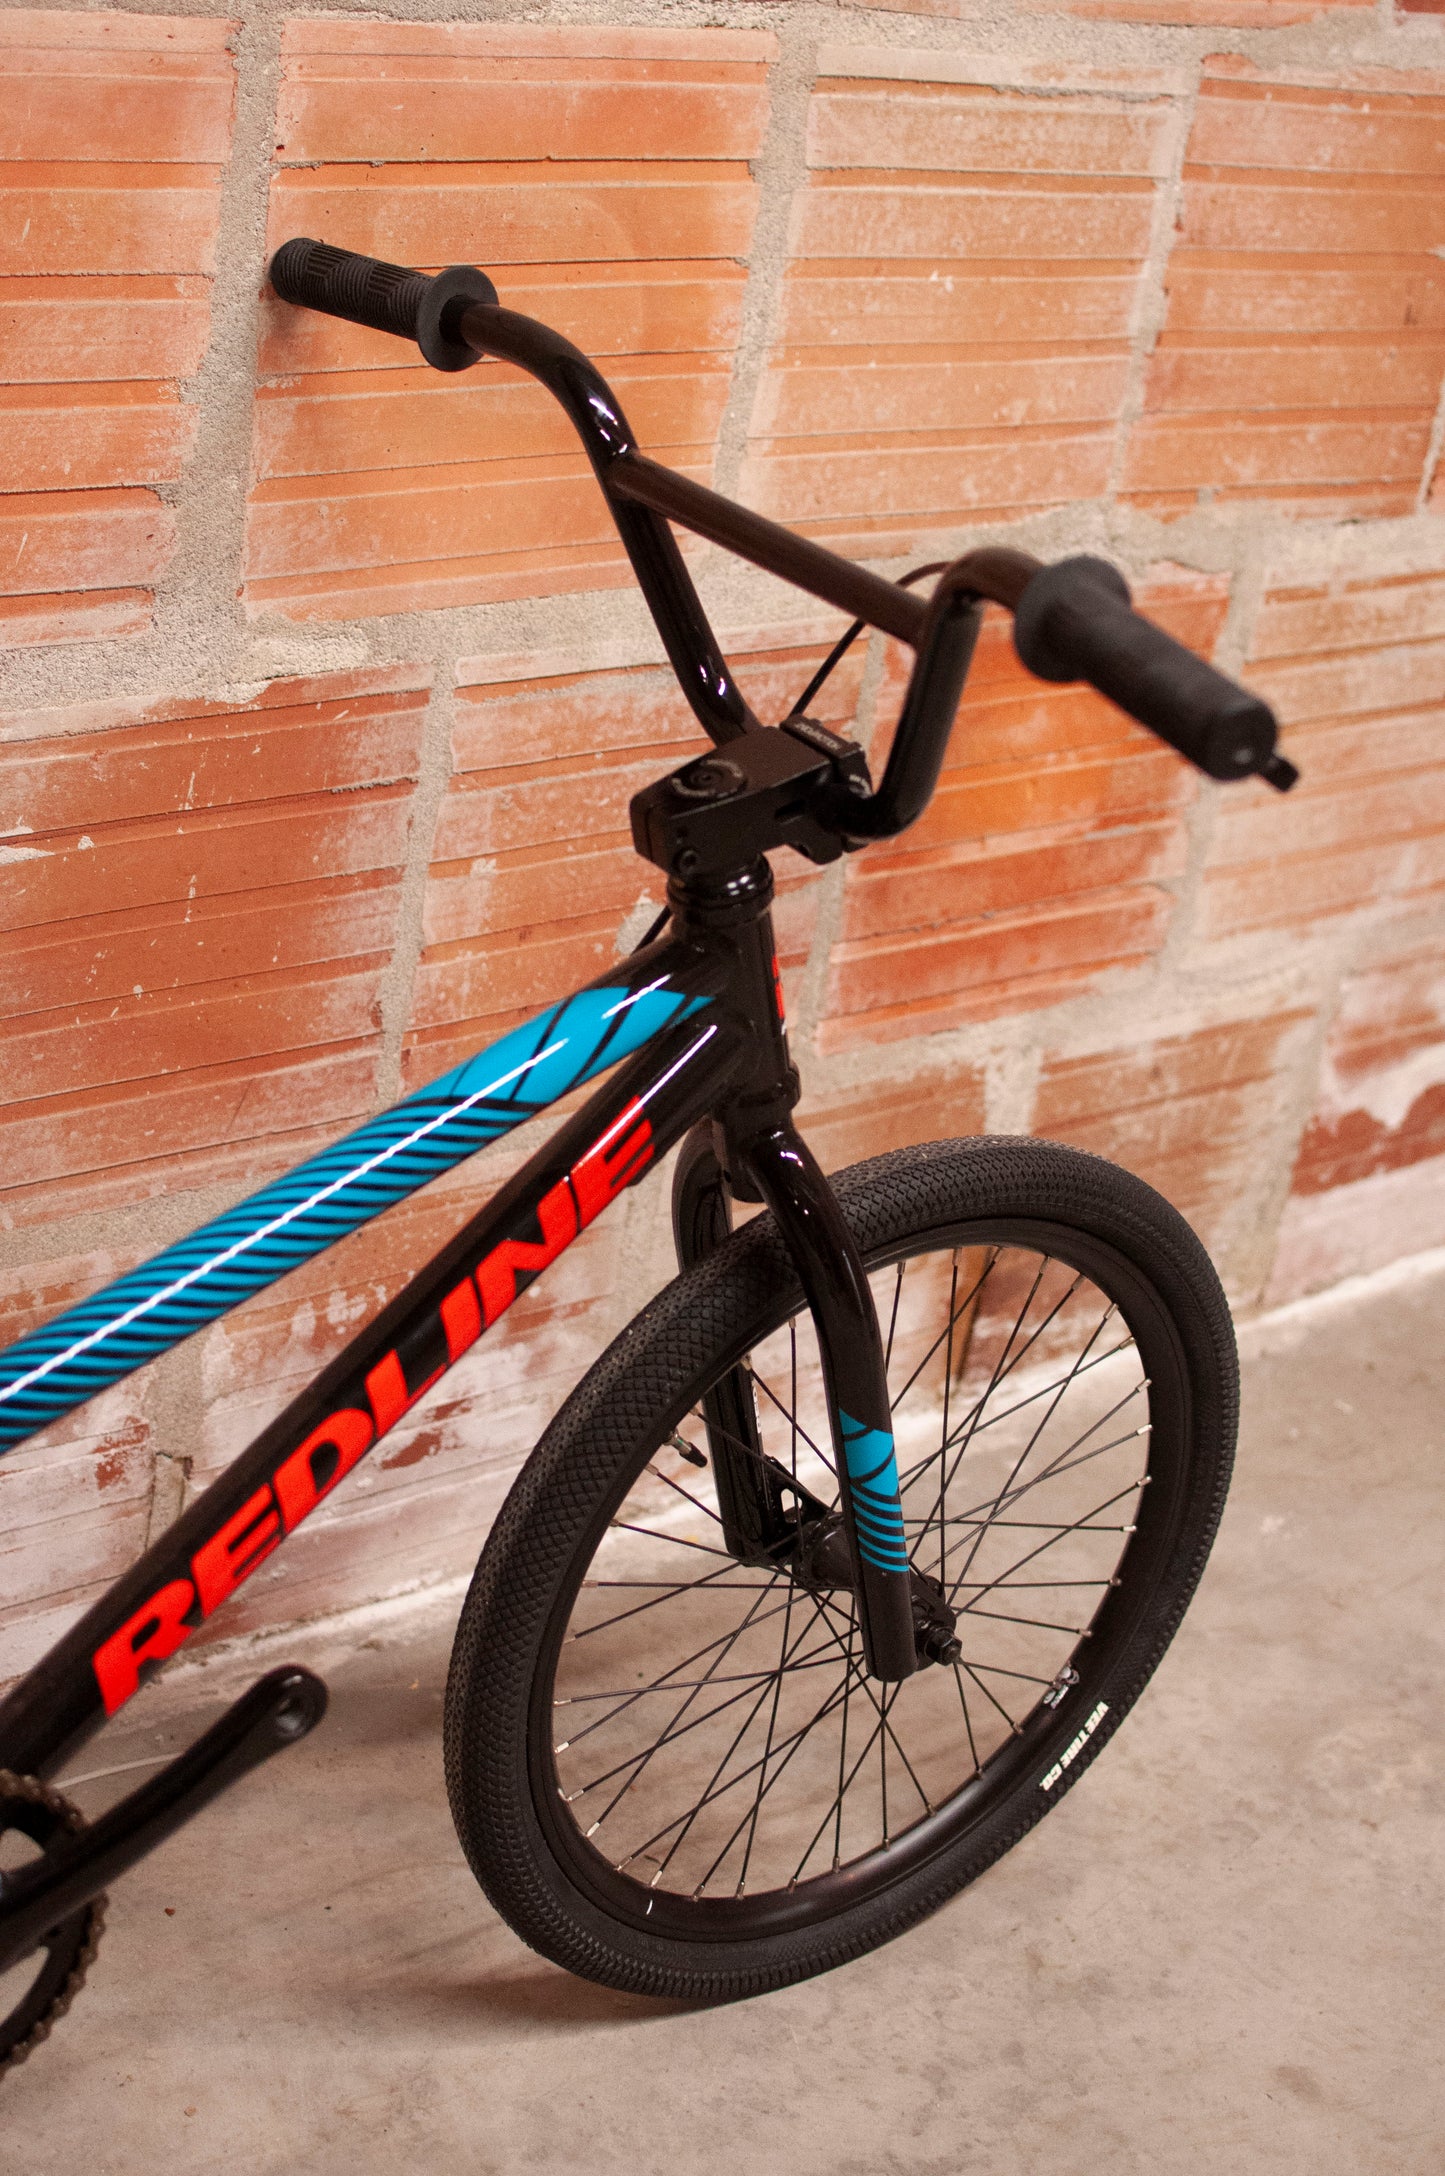 Redline MX Expert XL BMX Racing Bike, Black, Red, Blue